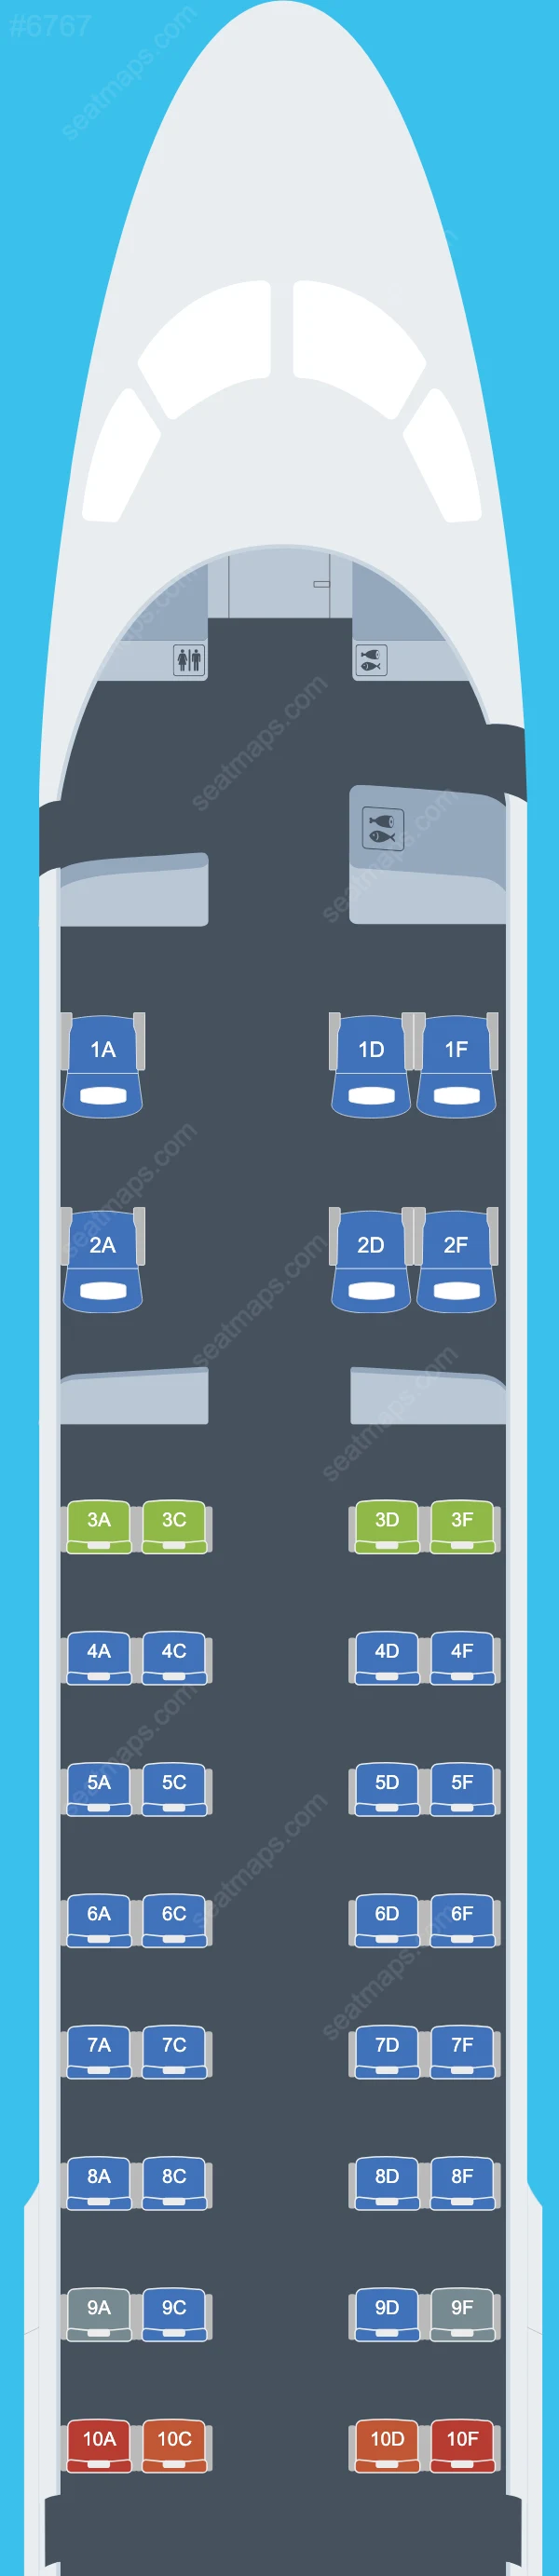 Airlink Embraer E190 Plan de Salle E190